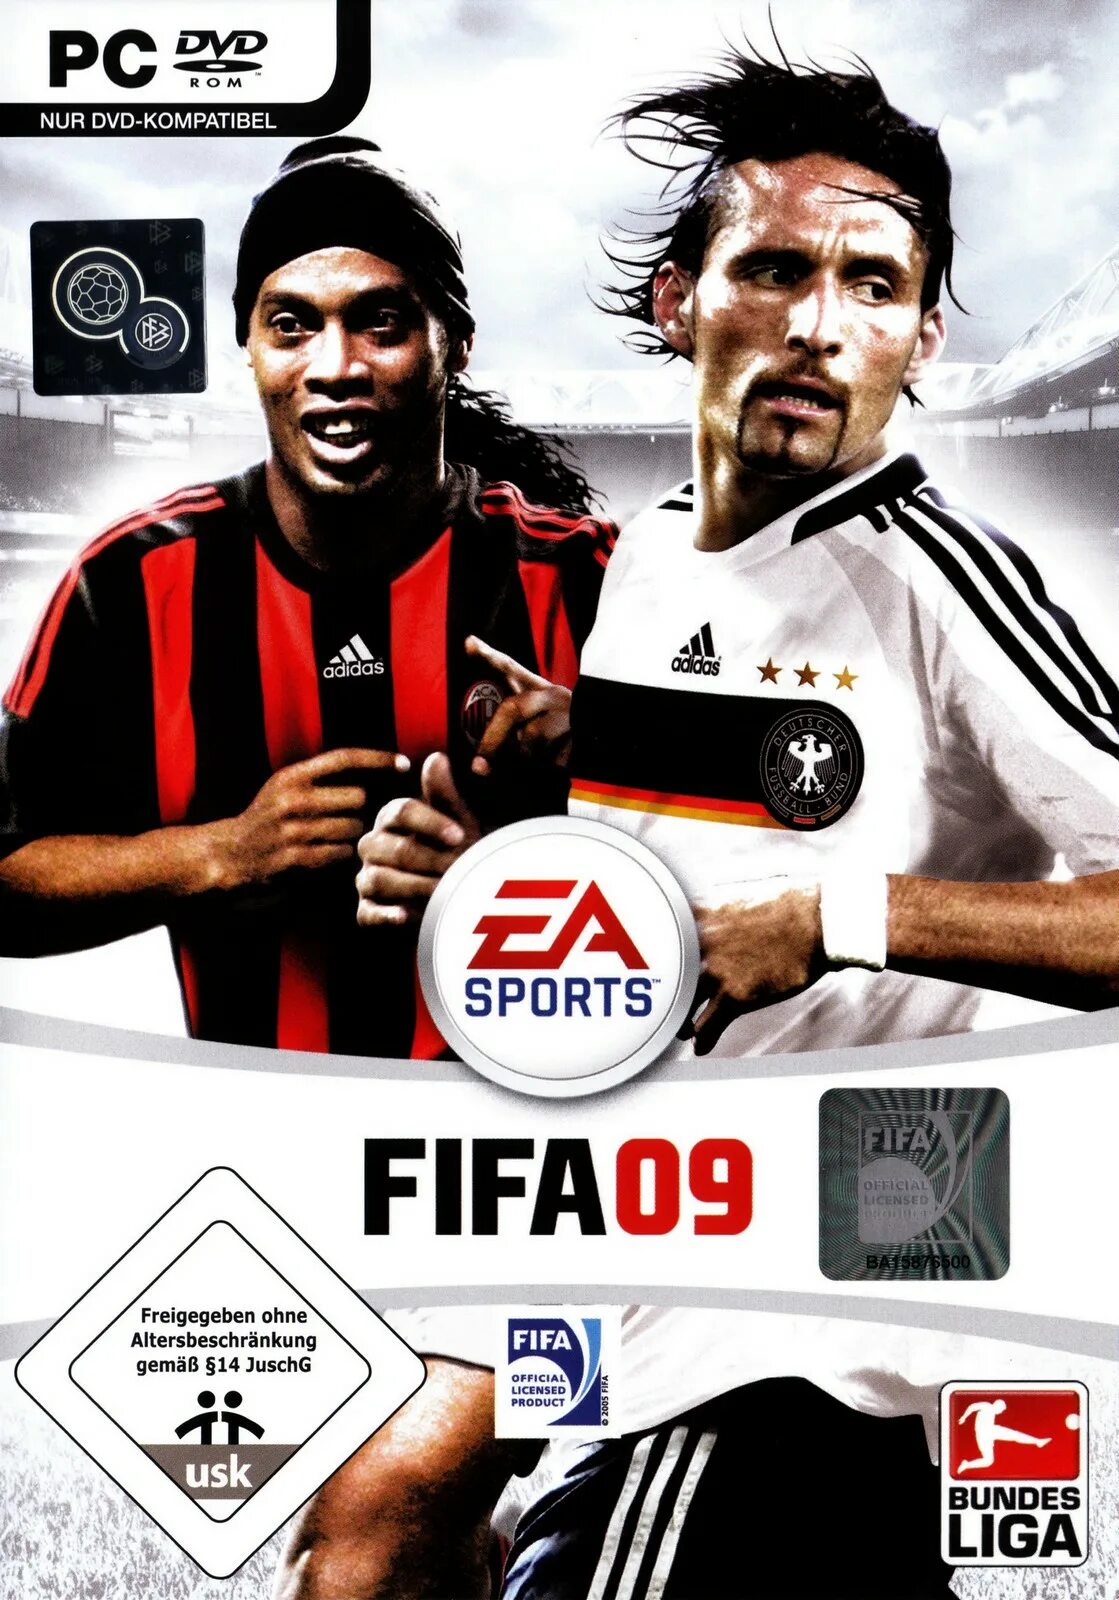 FIFA 09. ФИФА 9 года. ФИФА 09 Вердер. Когда вышла ФИФА.